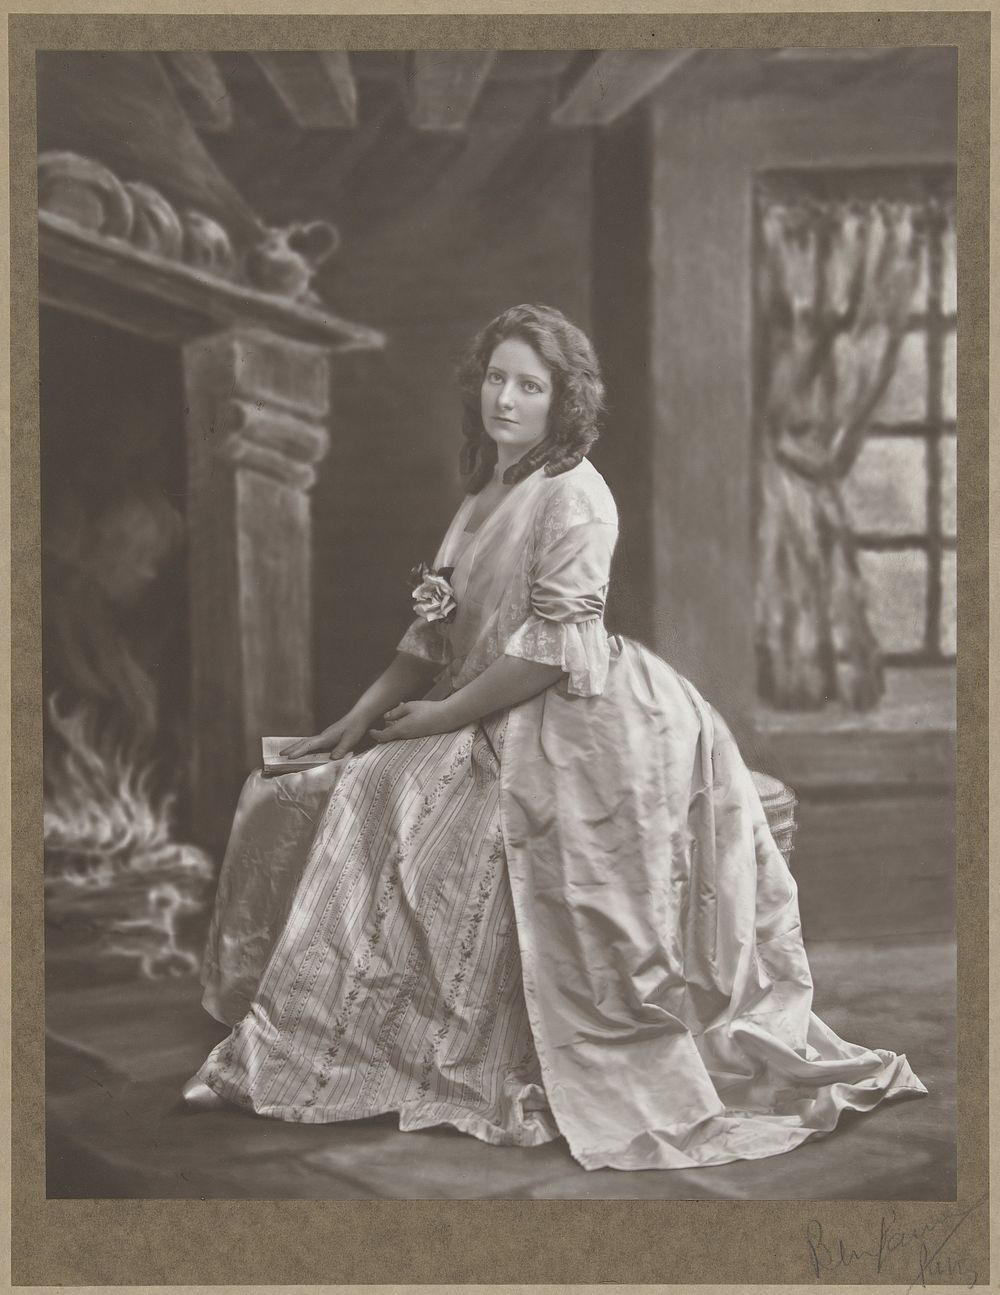 Portret van een onbekende vrouw in een geschilderd decor (1900 - 1925) by Benjamin fotograaf